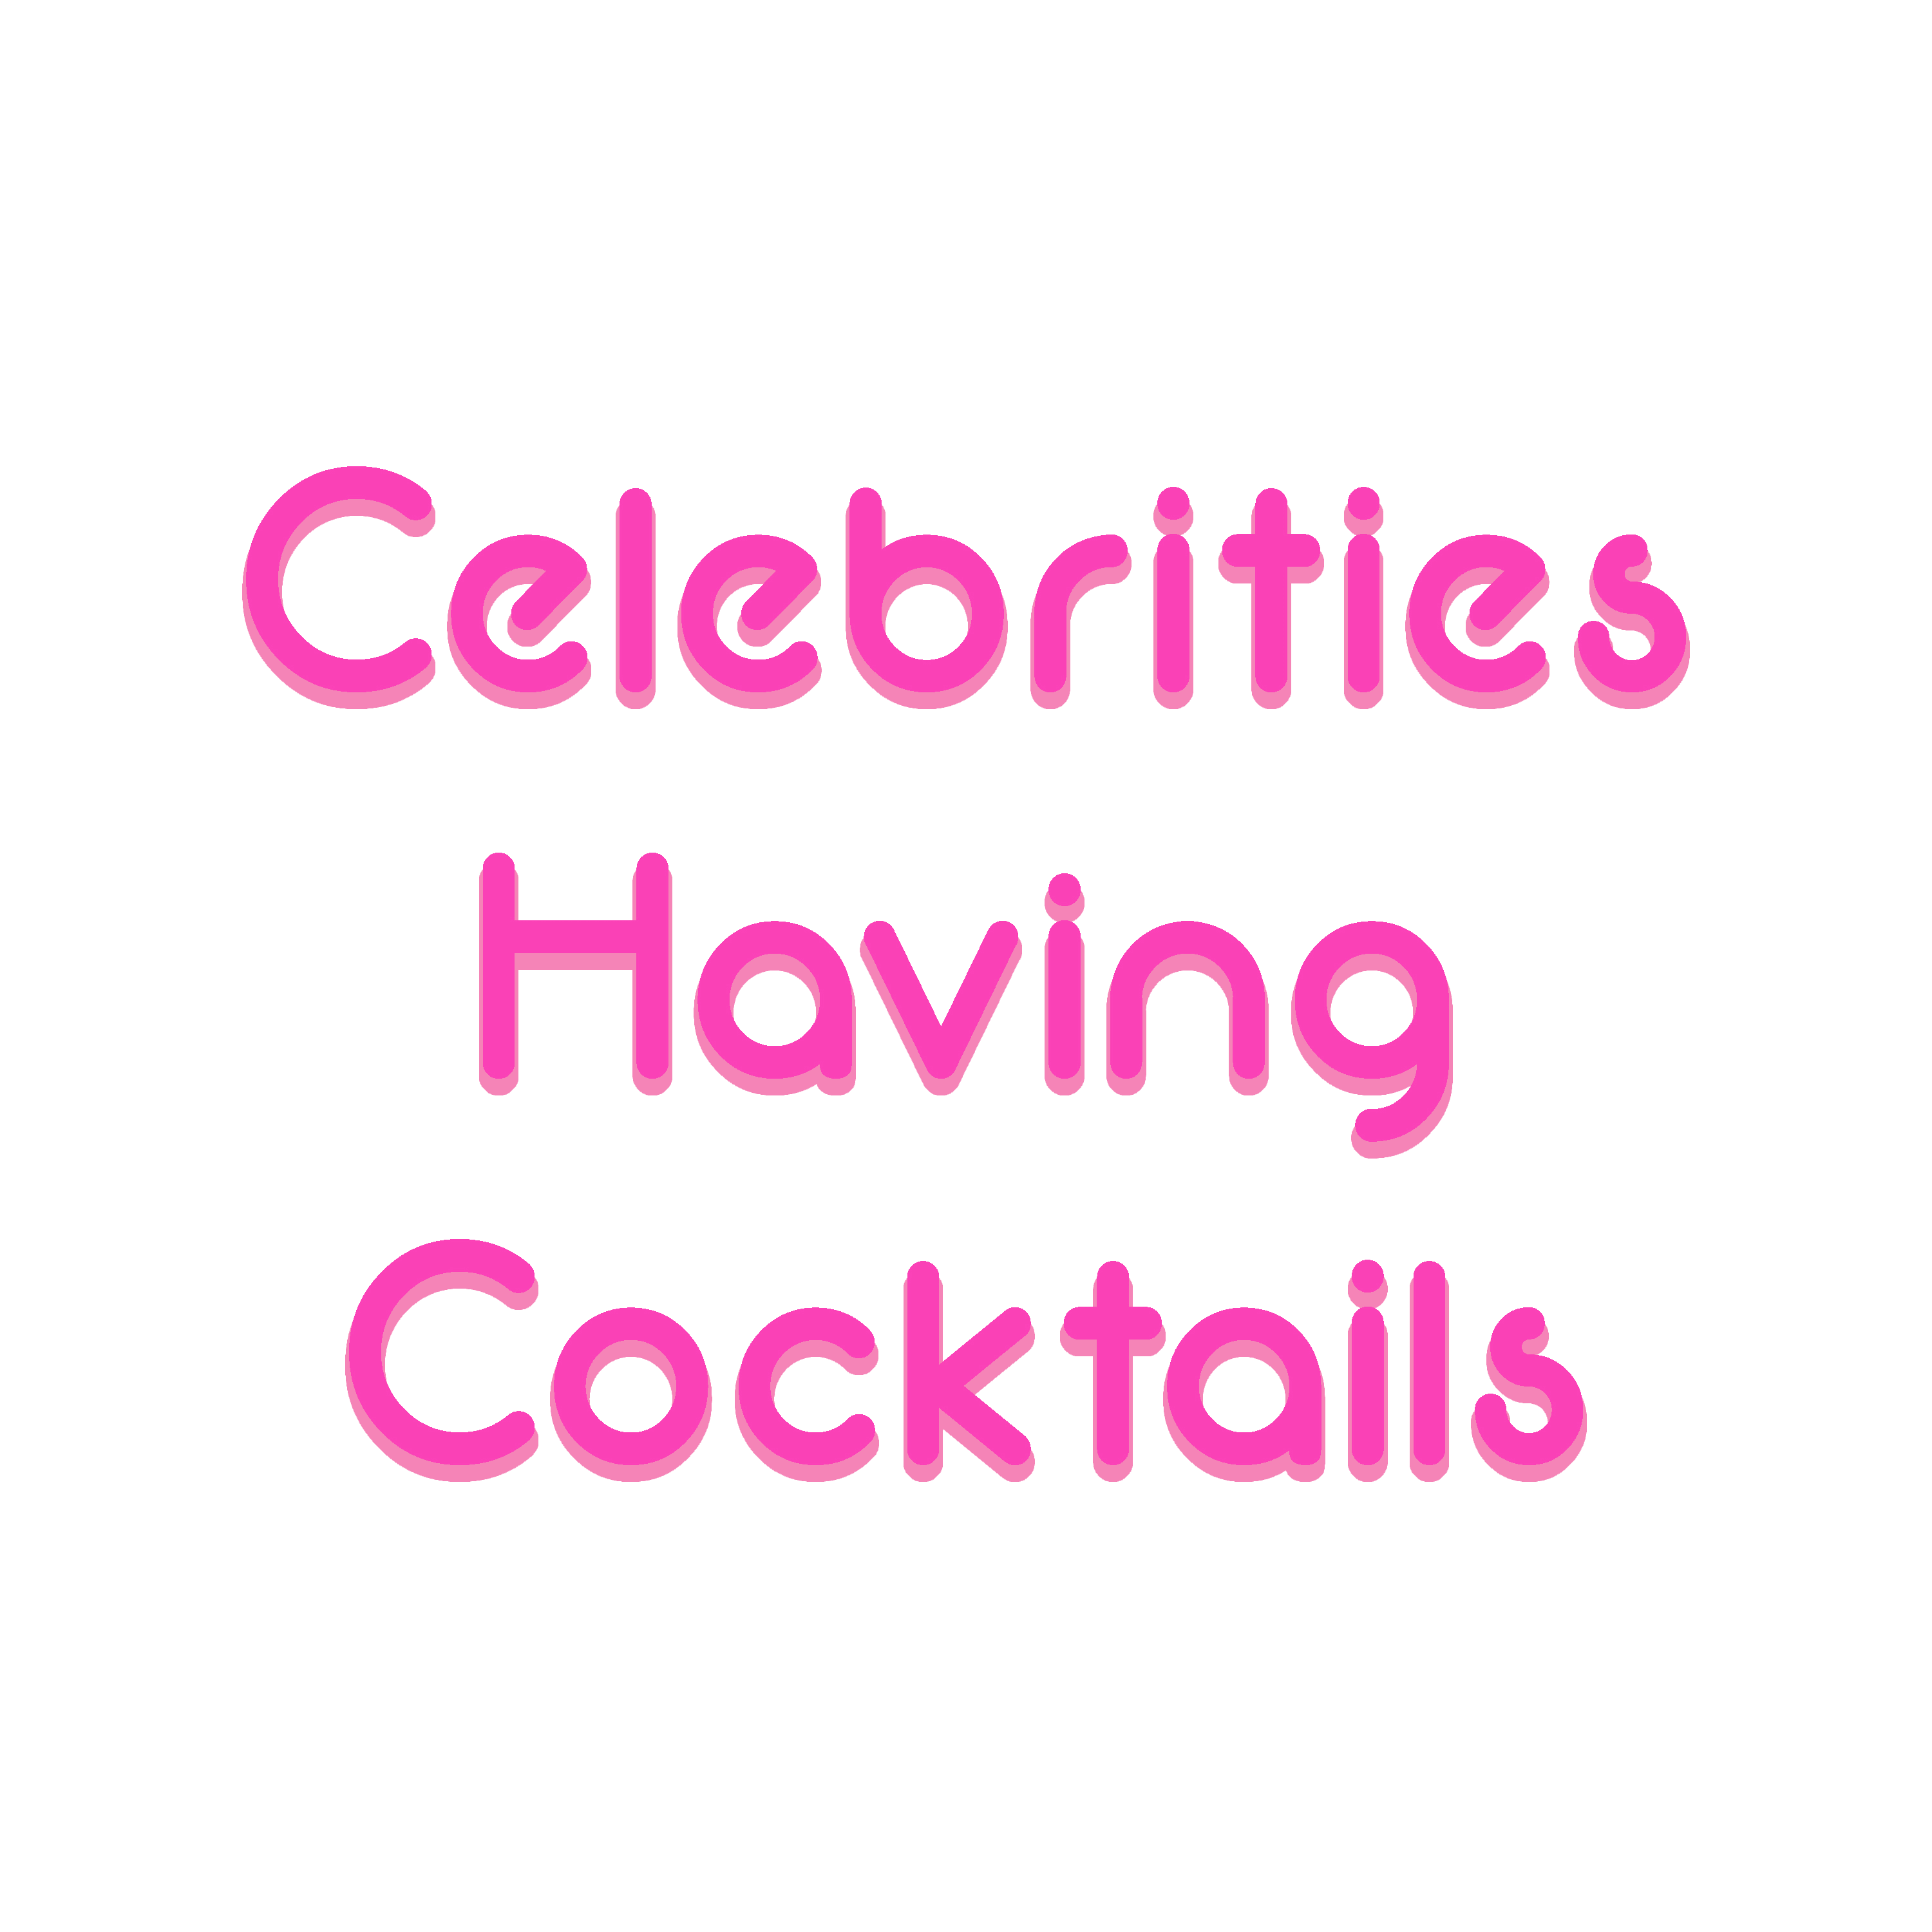 Celebrities Having Cocktails